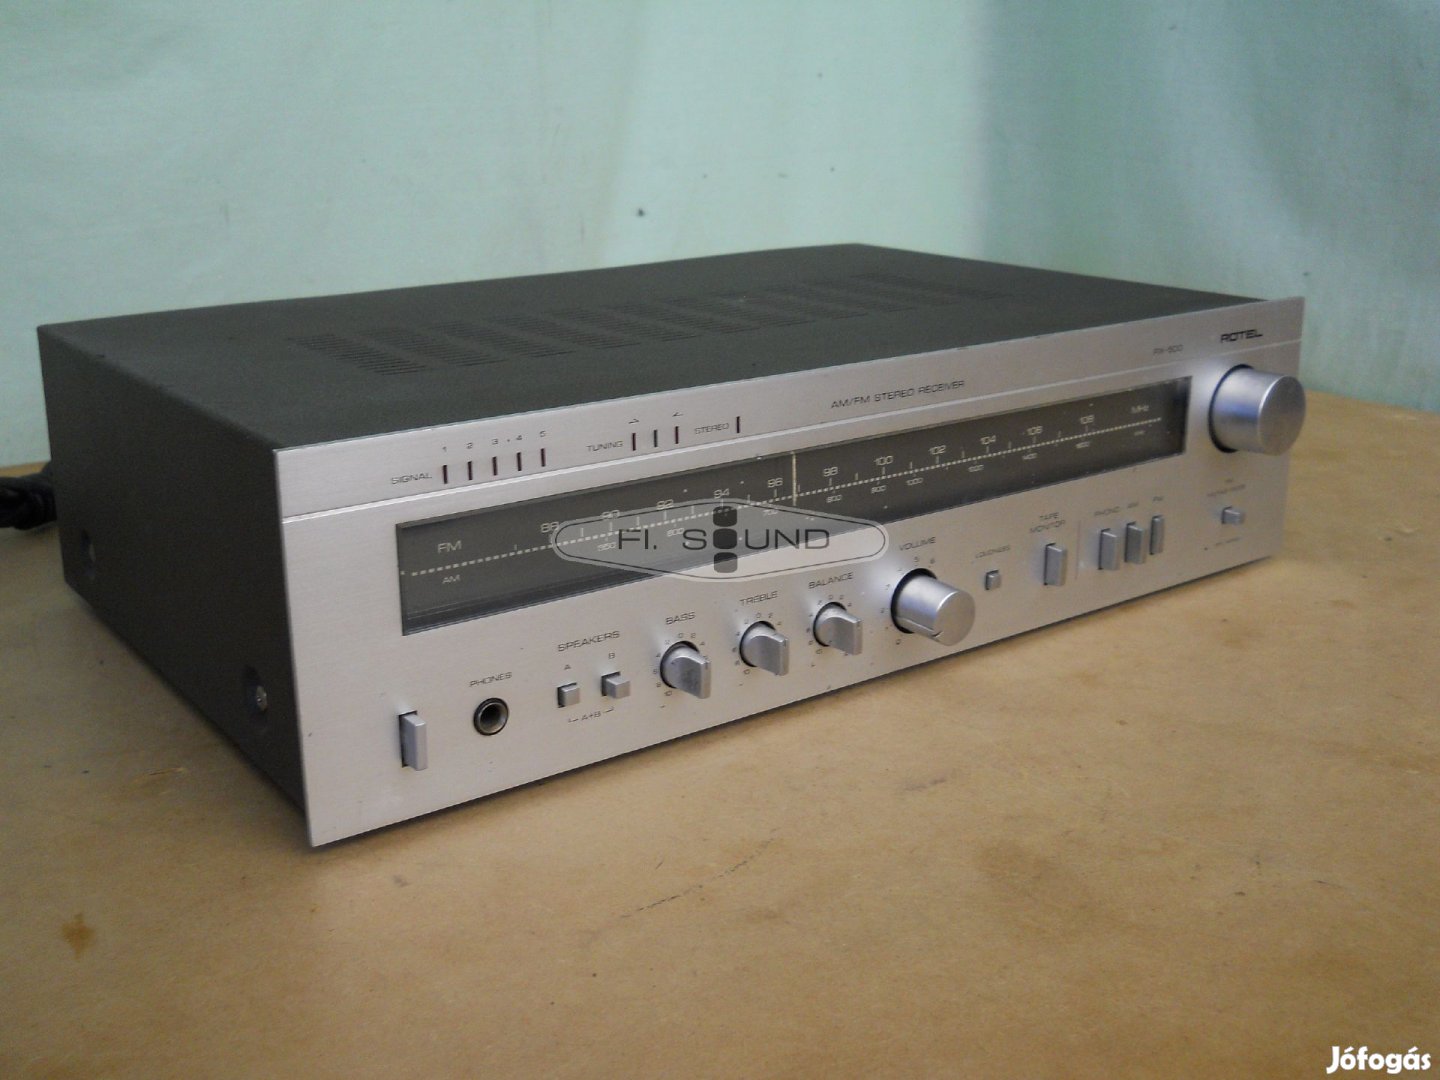 Rotel RX-500 ,200W,4-16ohm,4 hangfalas rádiós receiver